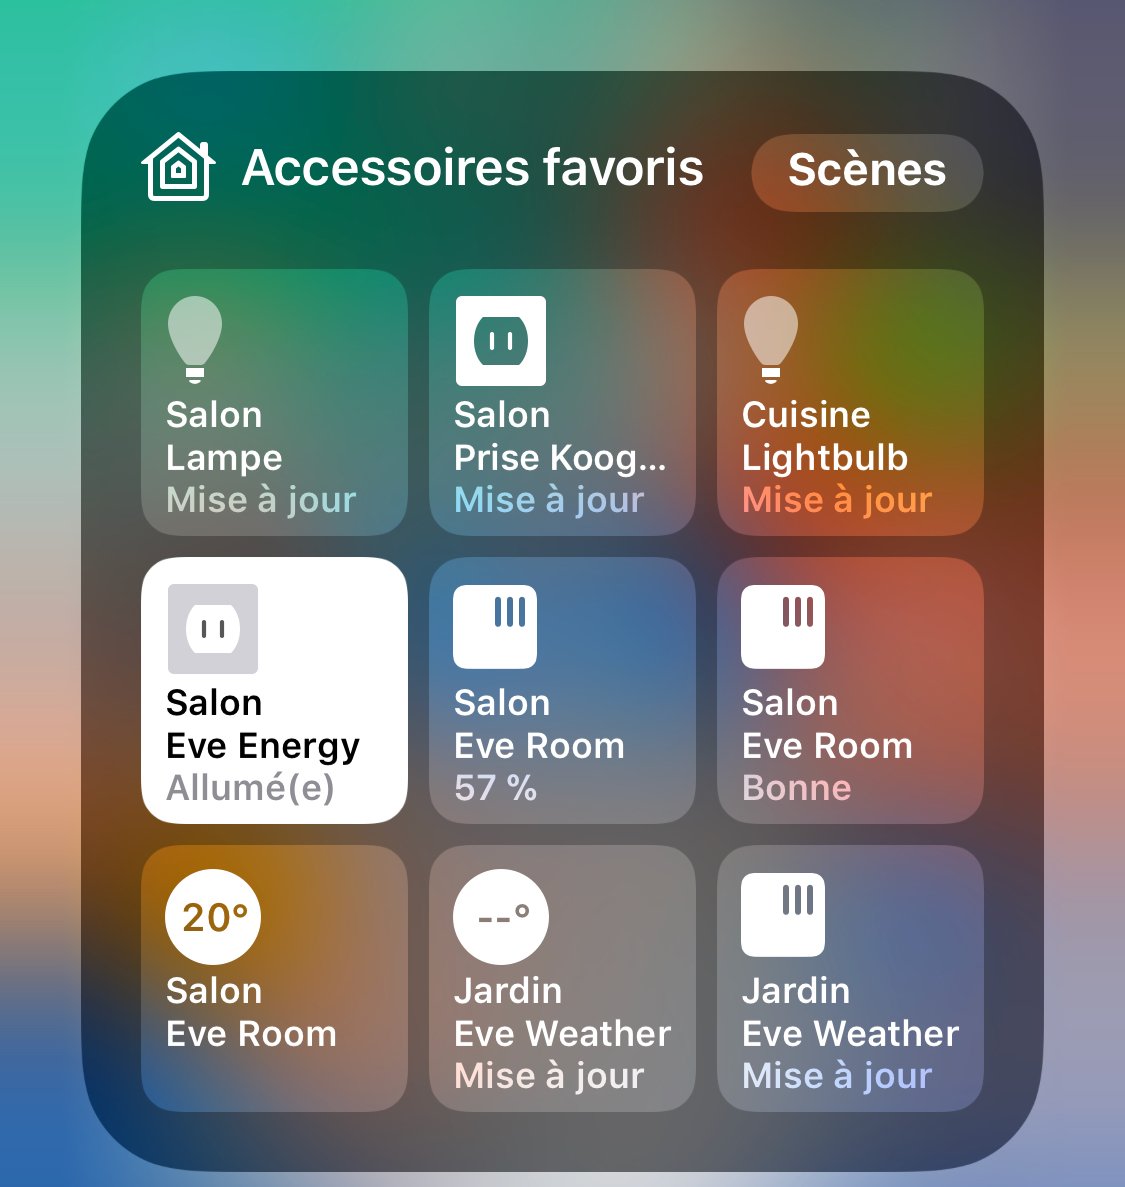 EVE WEATHER: Station météo connectée avec Apple HomeKit chez